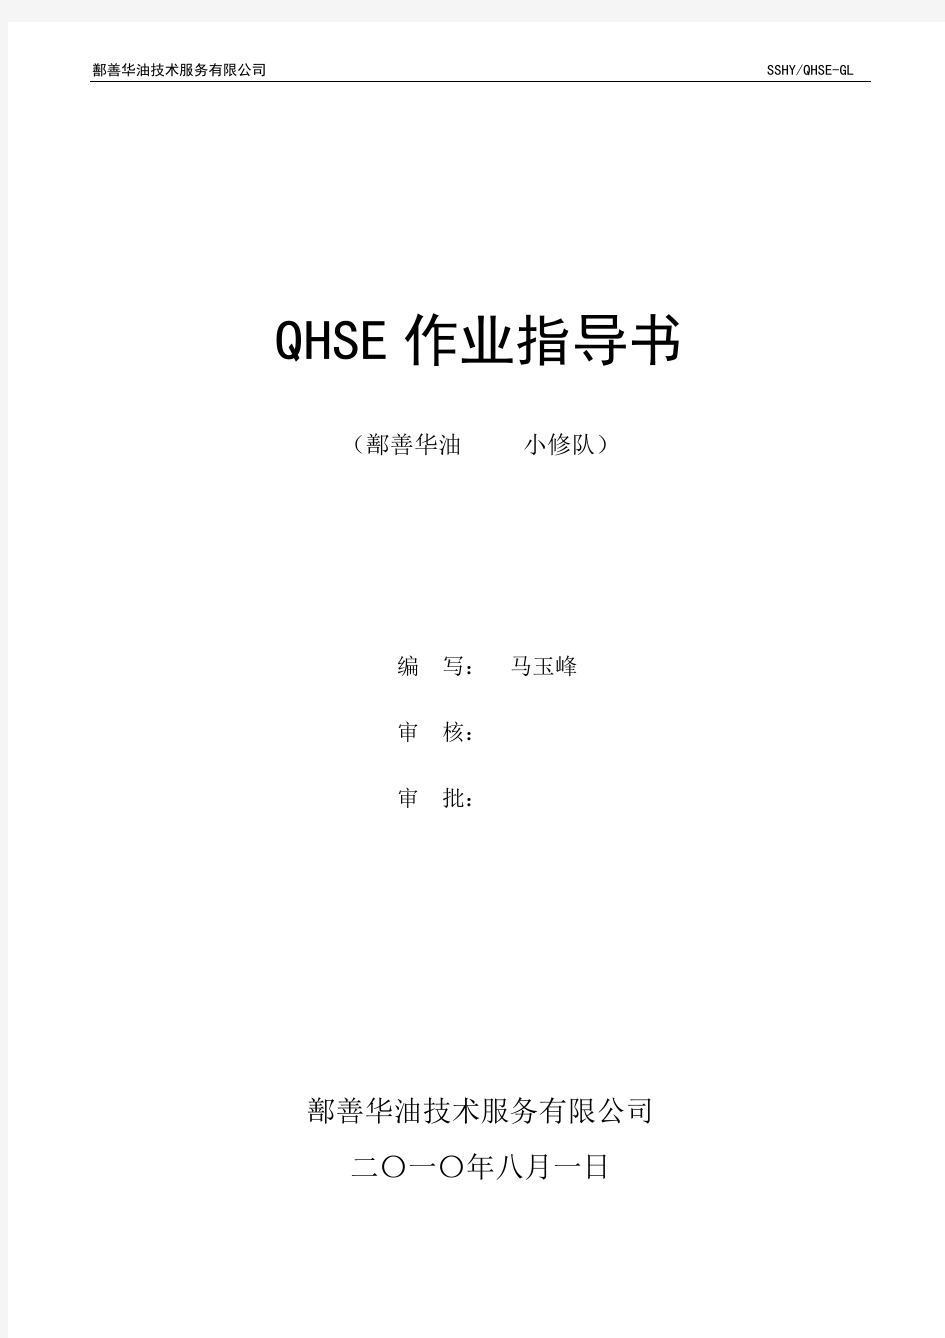 修井QHSE作业指导书和作业流程图.